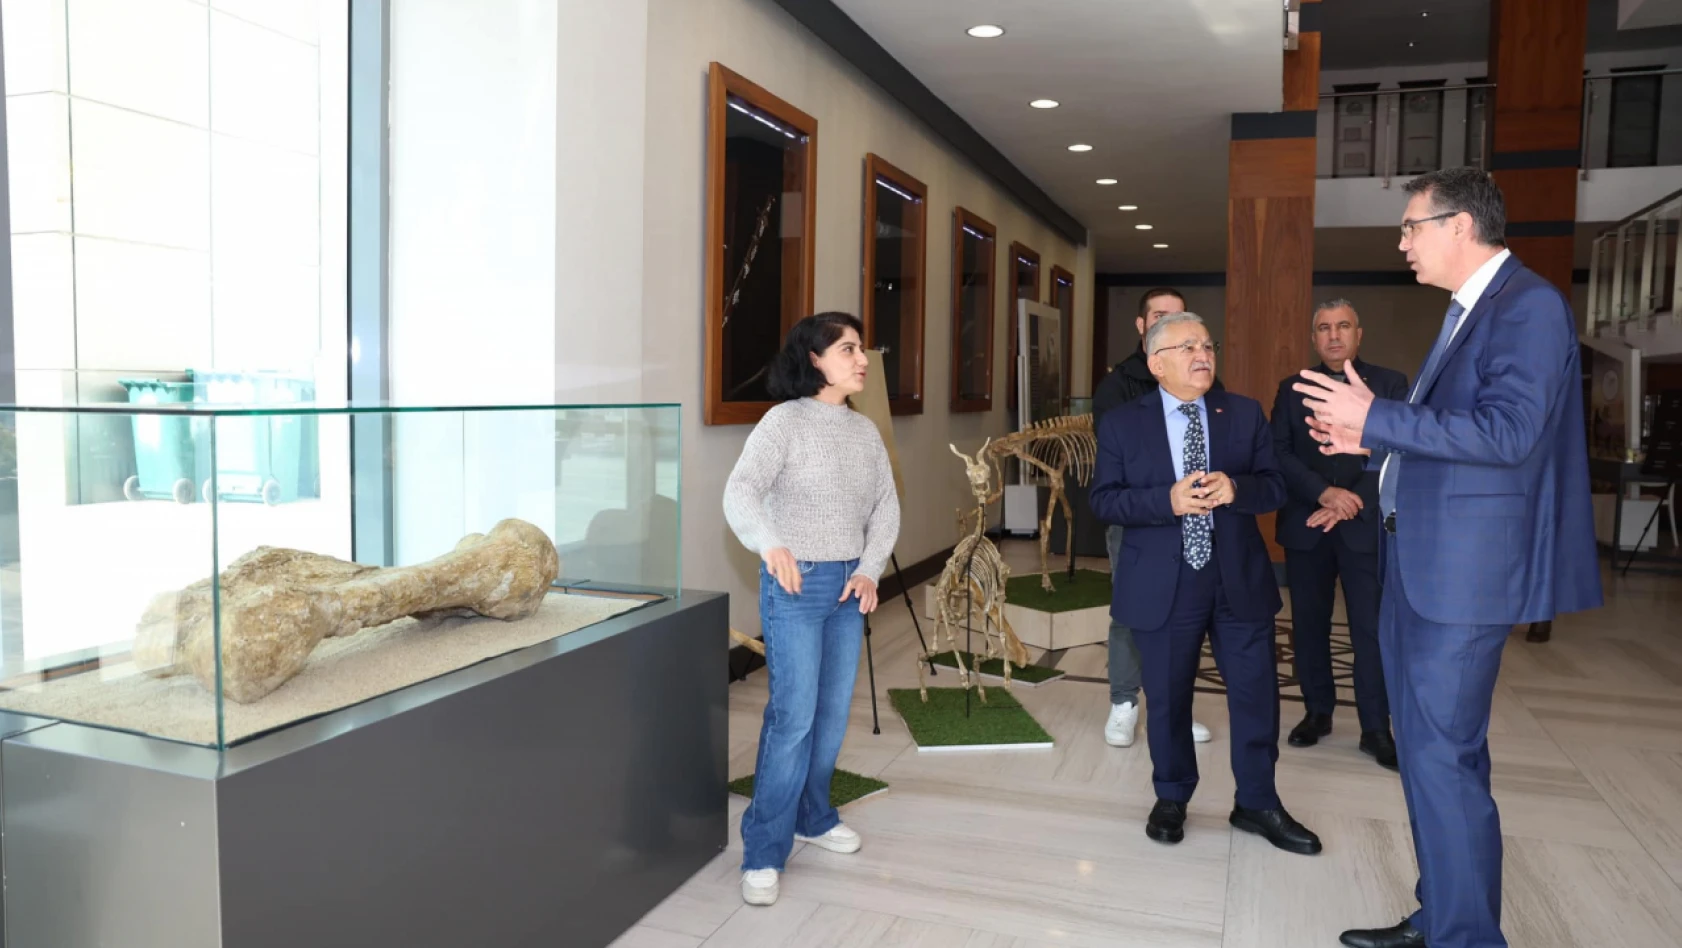 Başkan Büyükkılıç, Başsavcı Bölükbaşı'ya fosil sergisini gezidirdi!